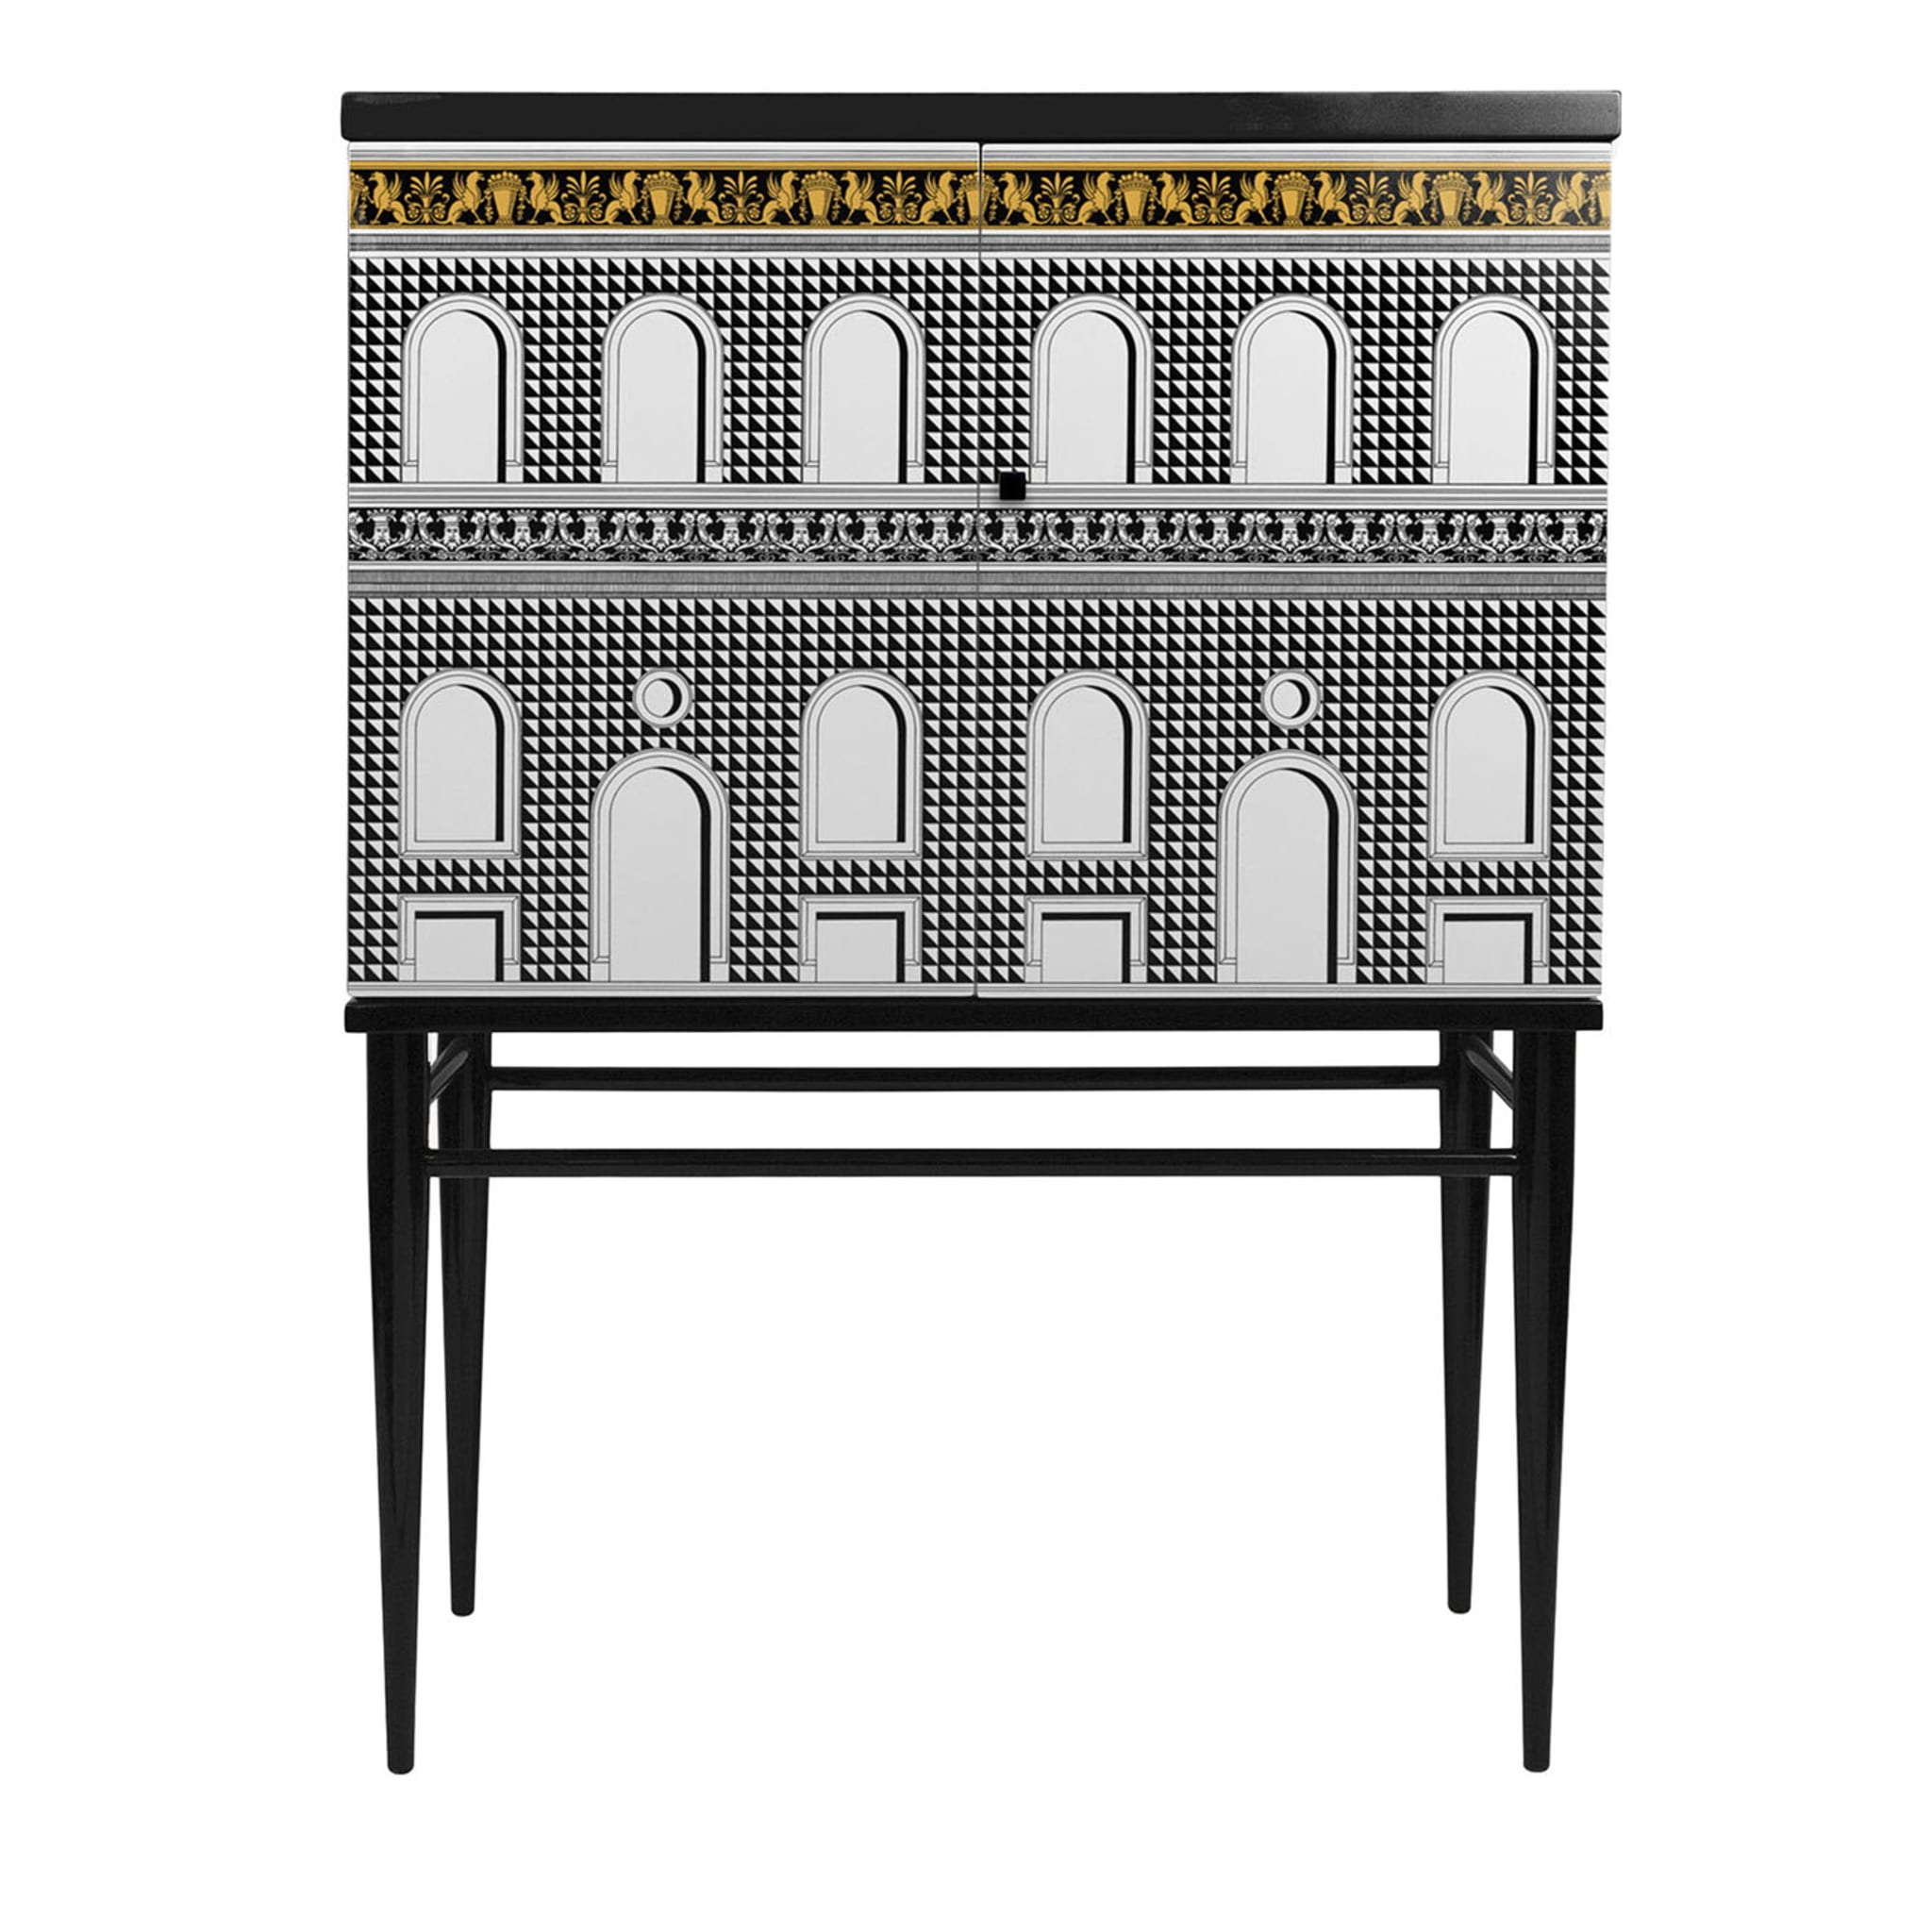 Facciata Quattrocentesca Raised Small Cabinet #1 - Main view